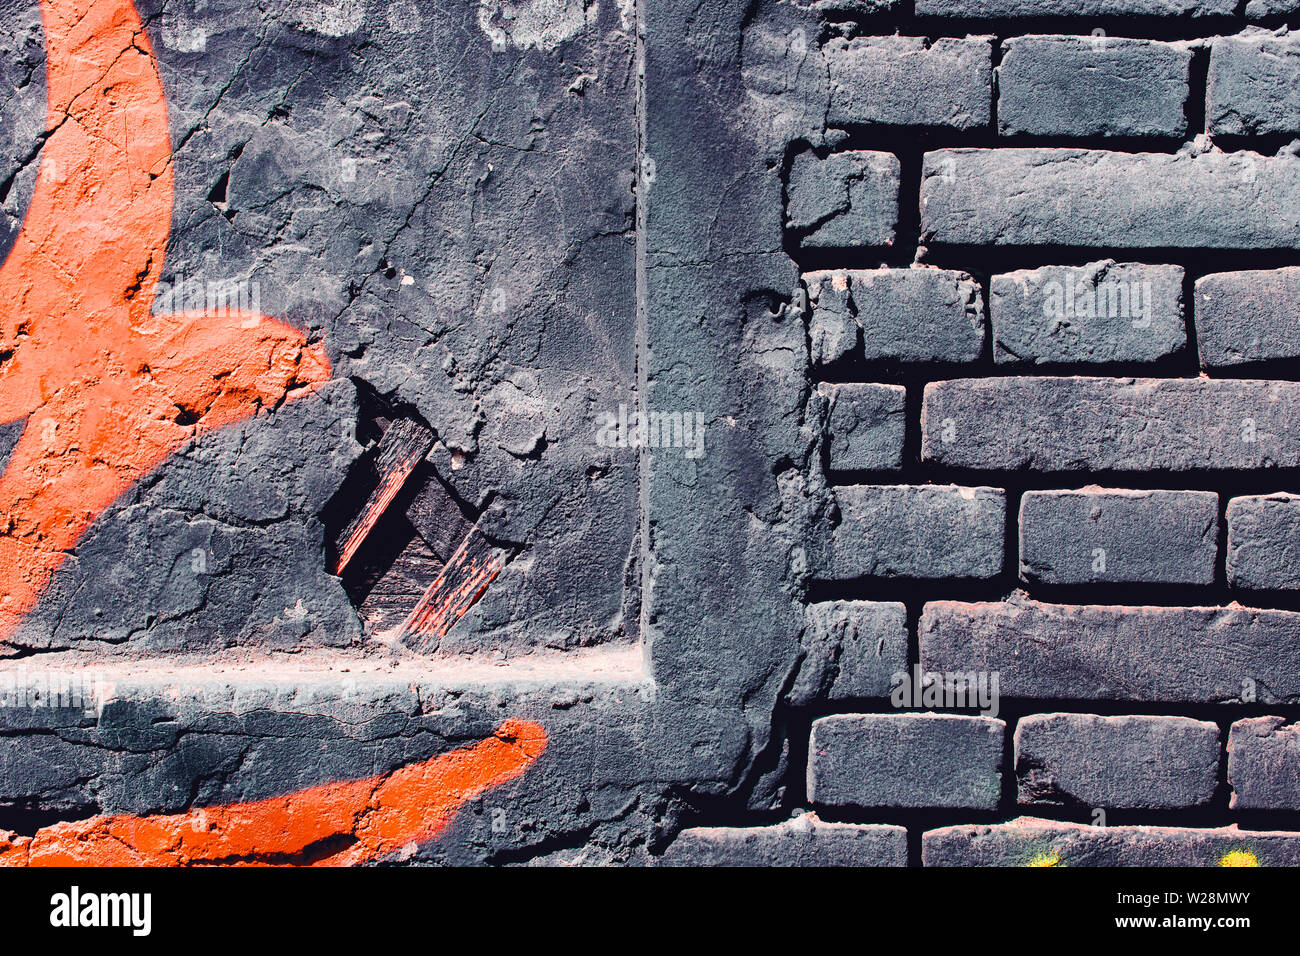 Grunge, gris foncé, fond rugueux avec de la peinture orange. Mur en brique sur la rue Banque D'Images